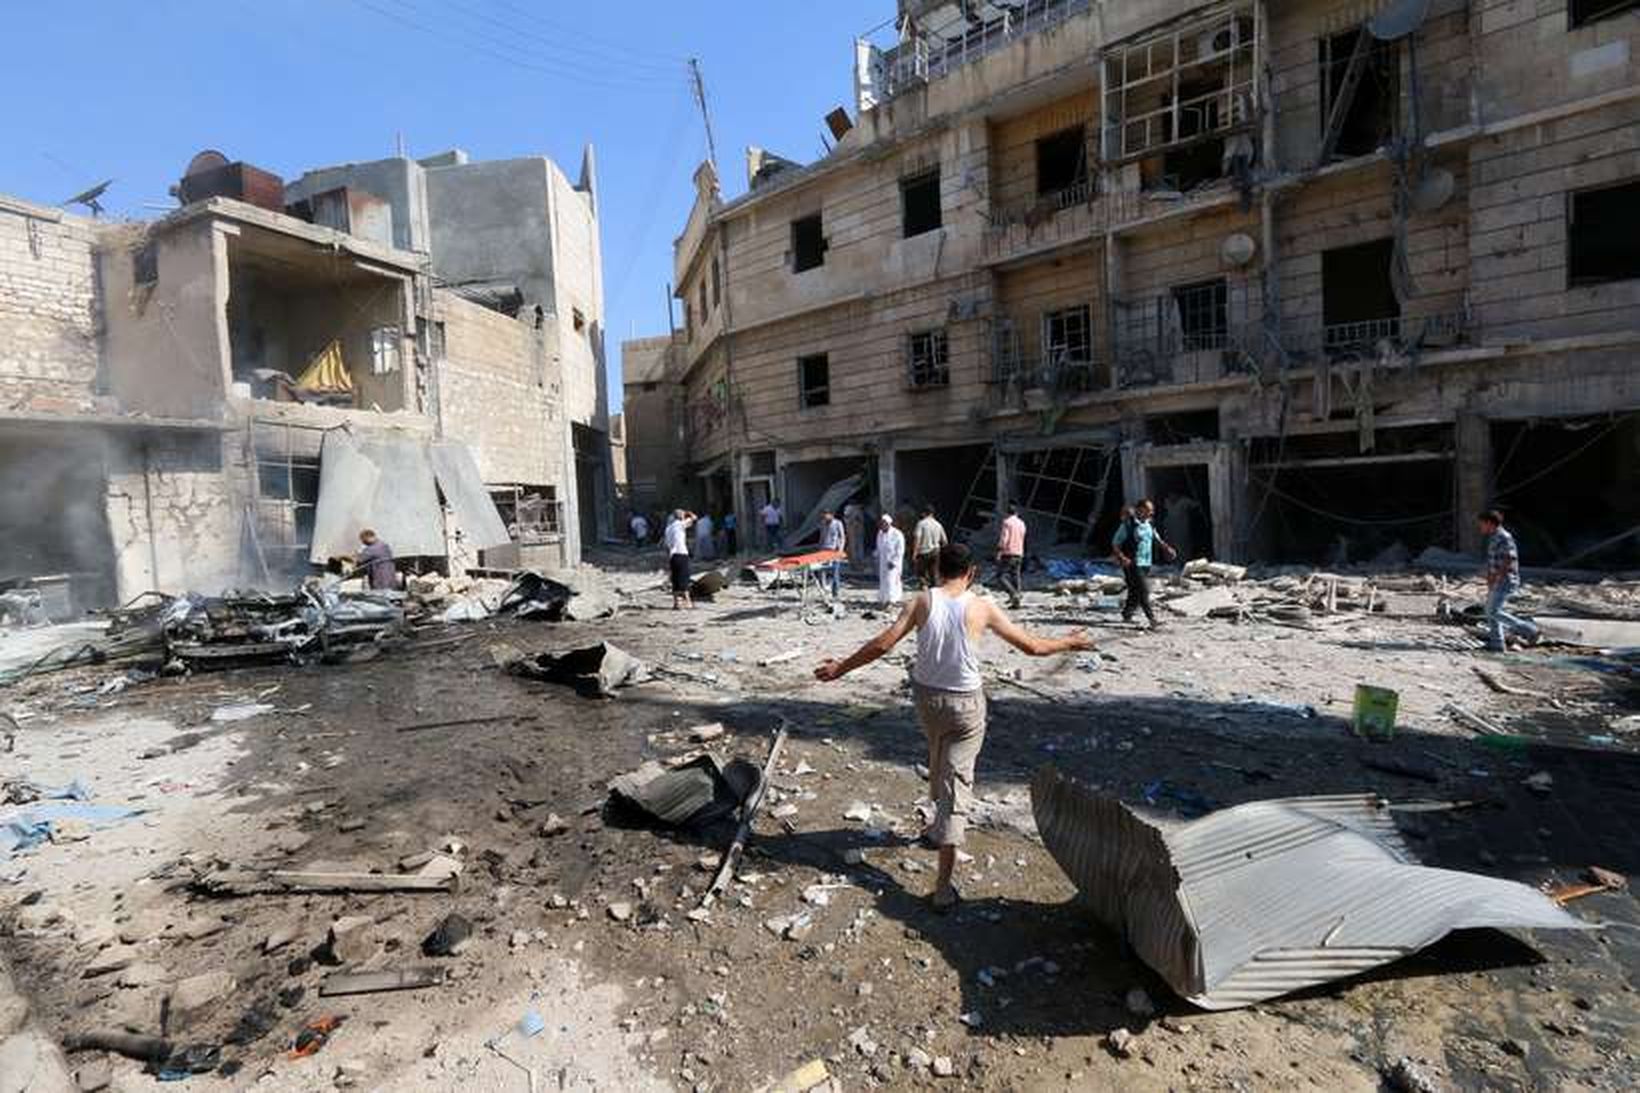 Stór svæði borgarinnar Aleppo eru rústir einar eftir stöðug átök.